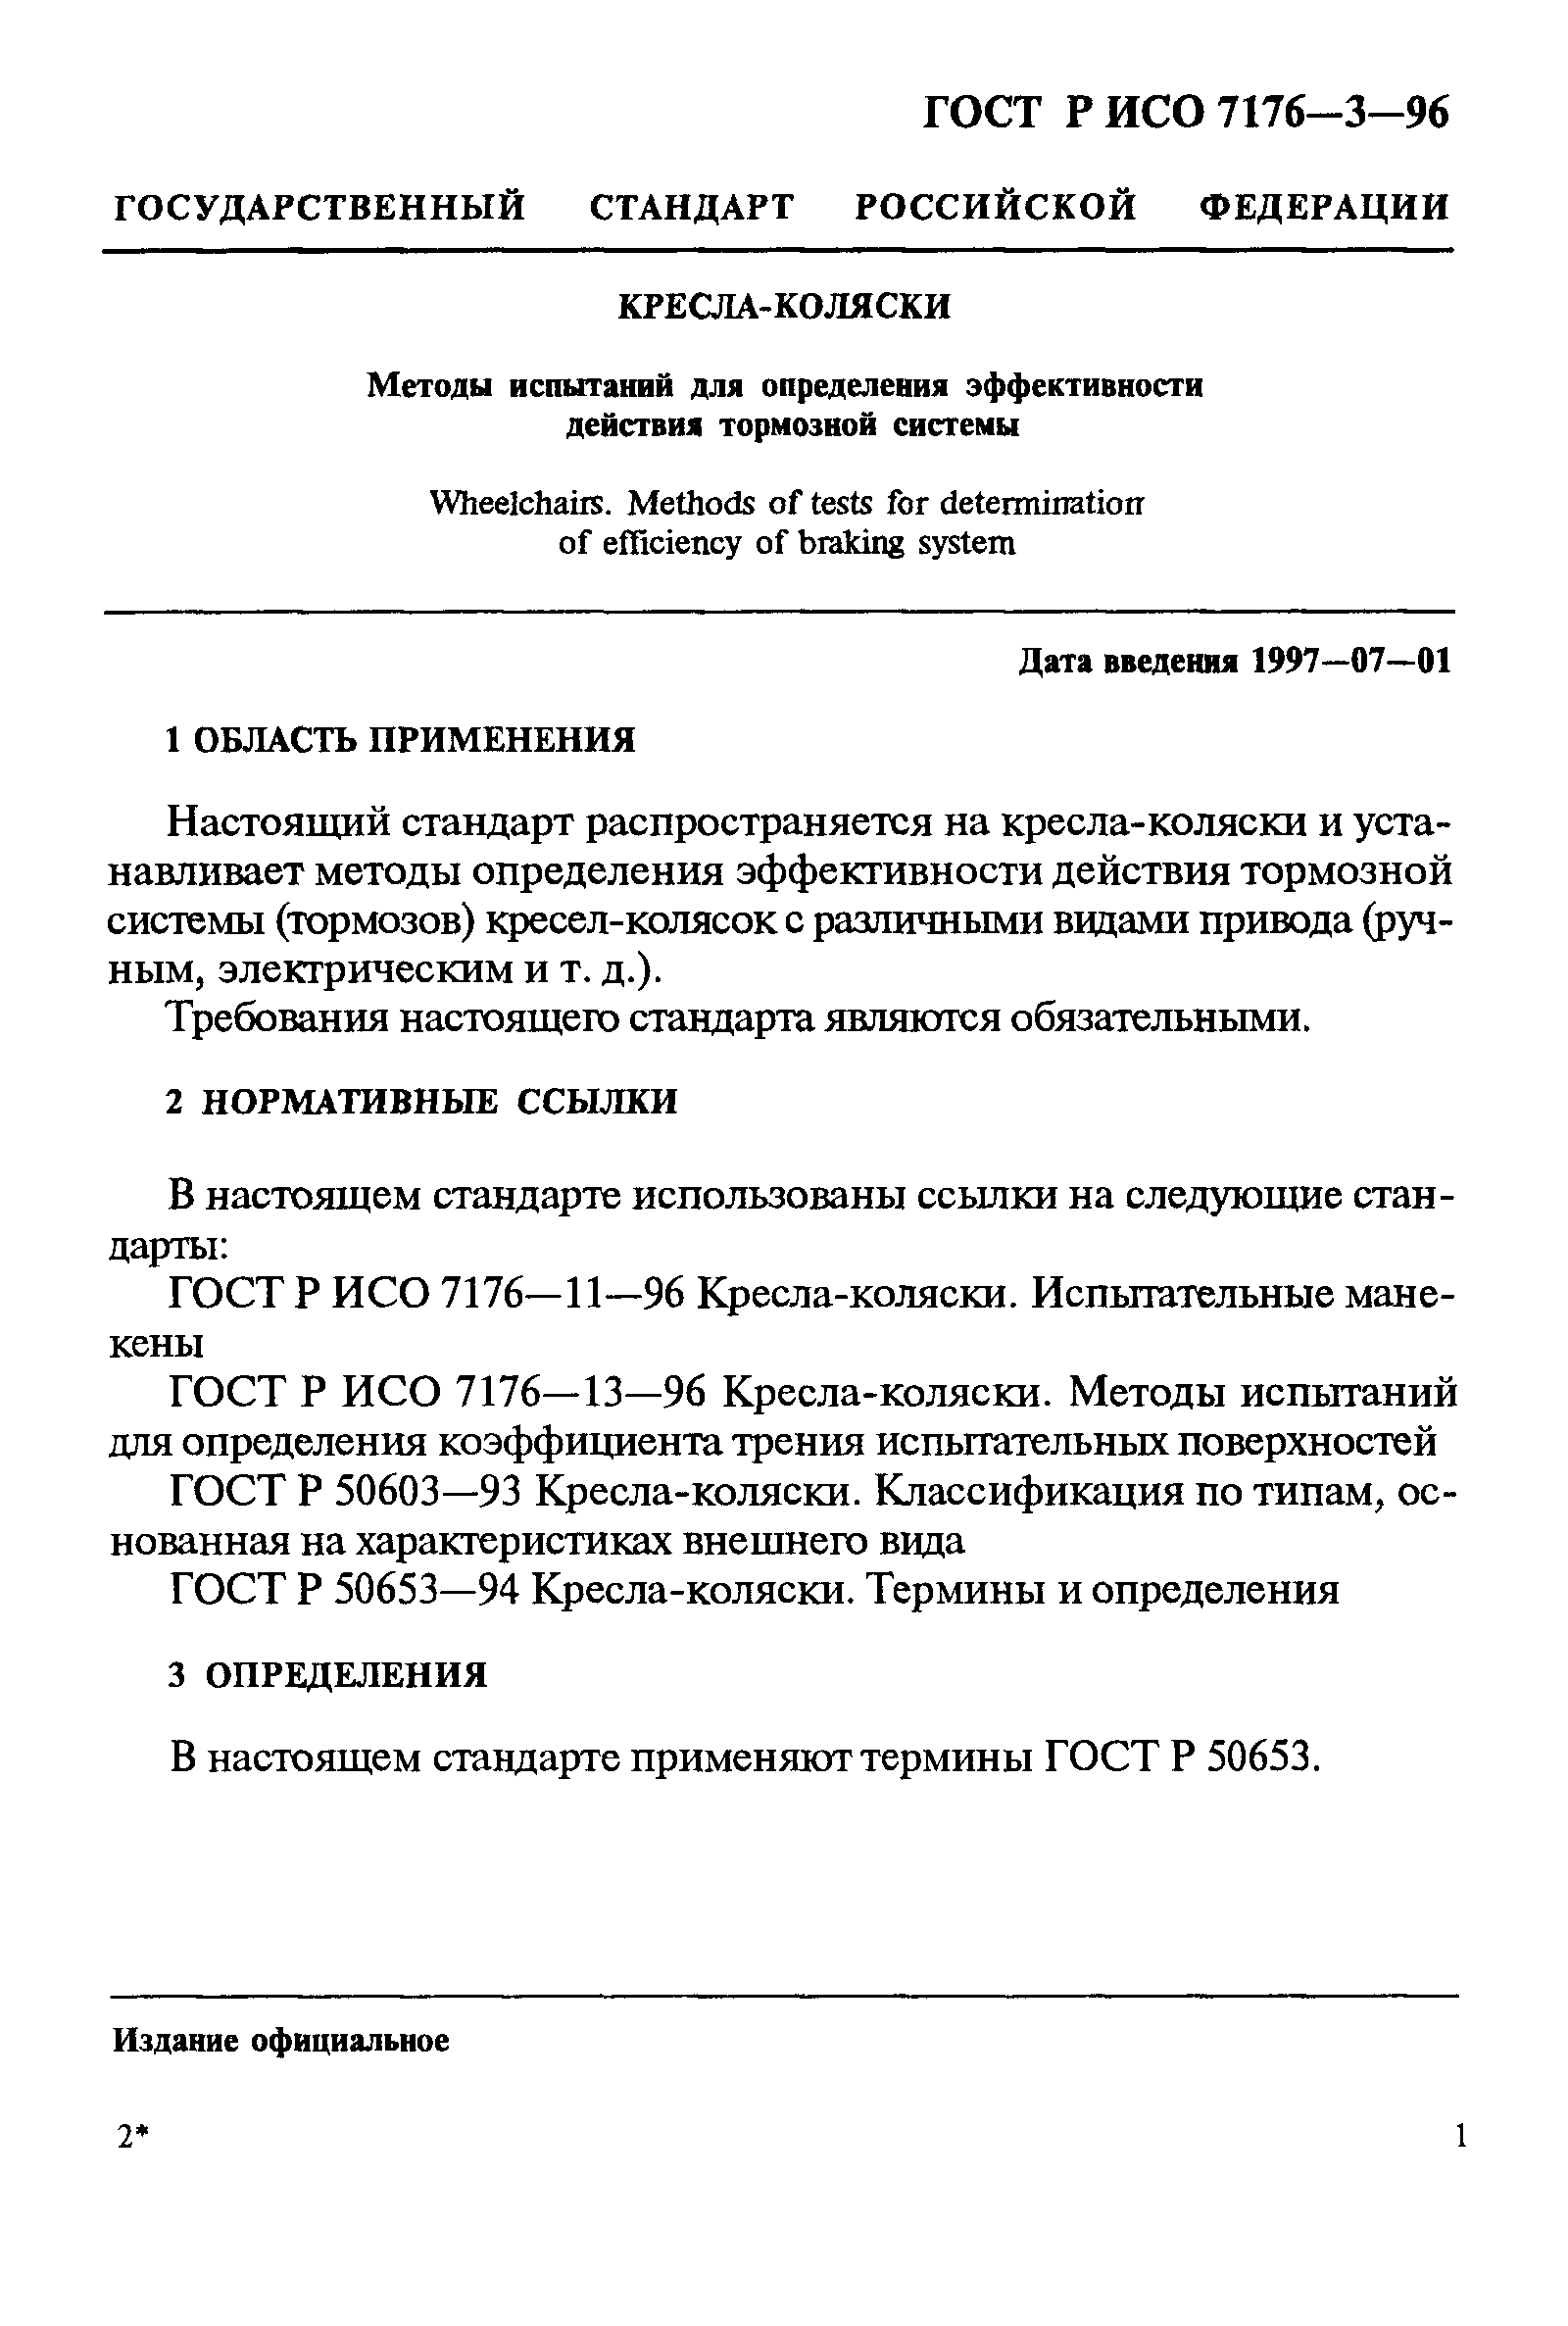 ГОСТ Р ИСО 7176-3-96